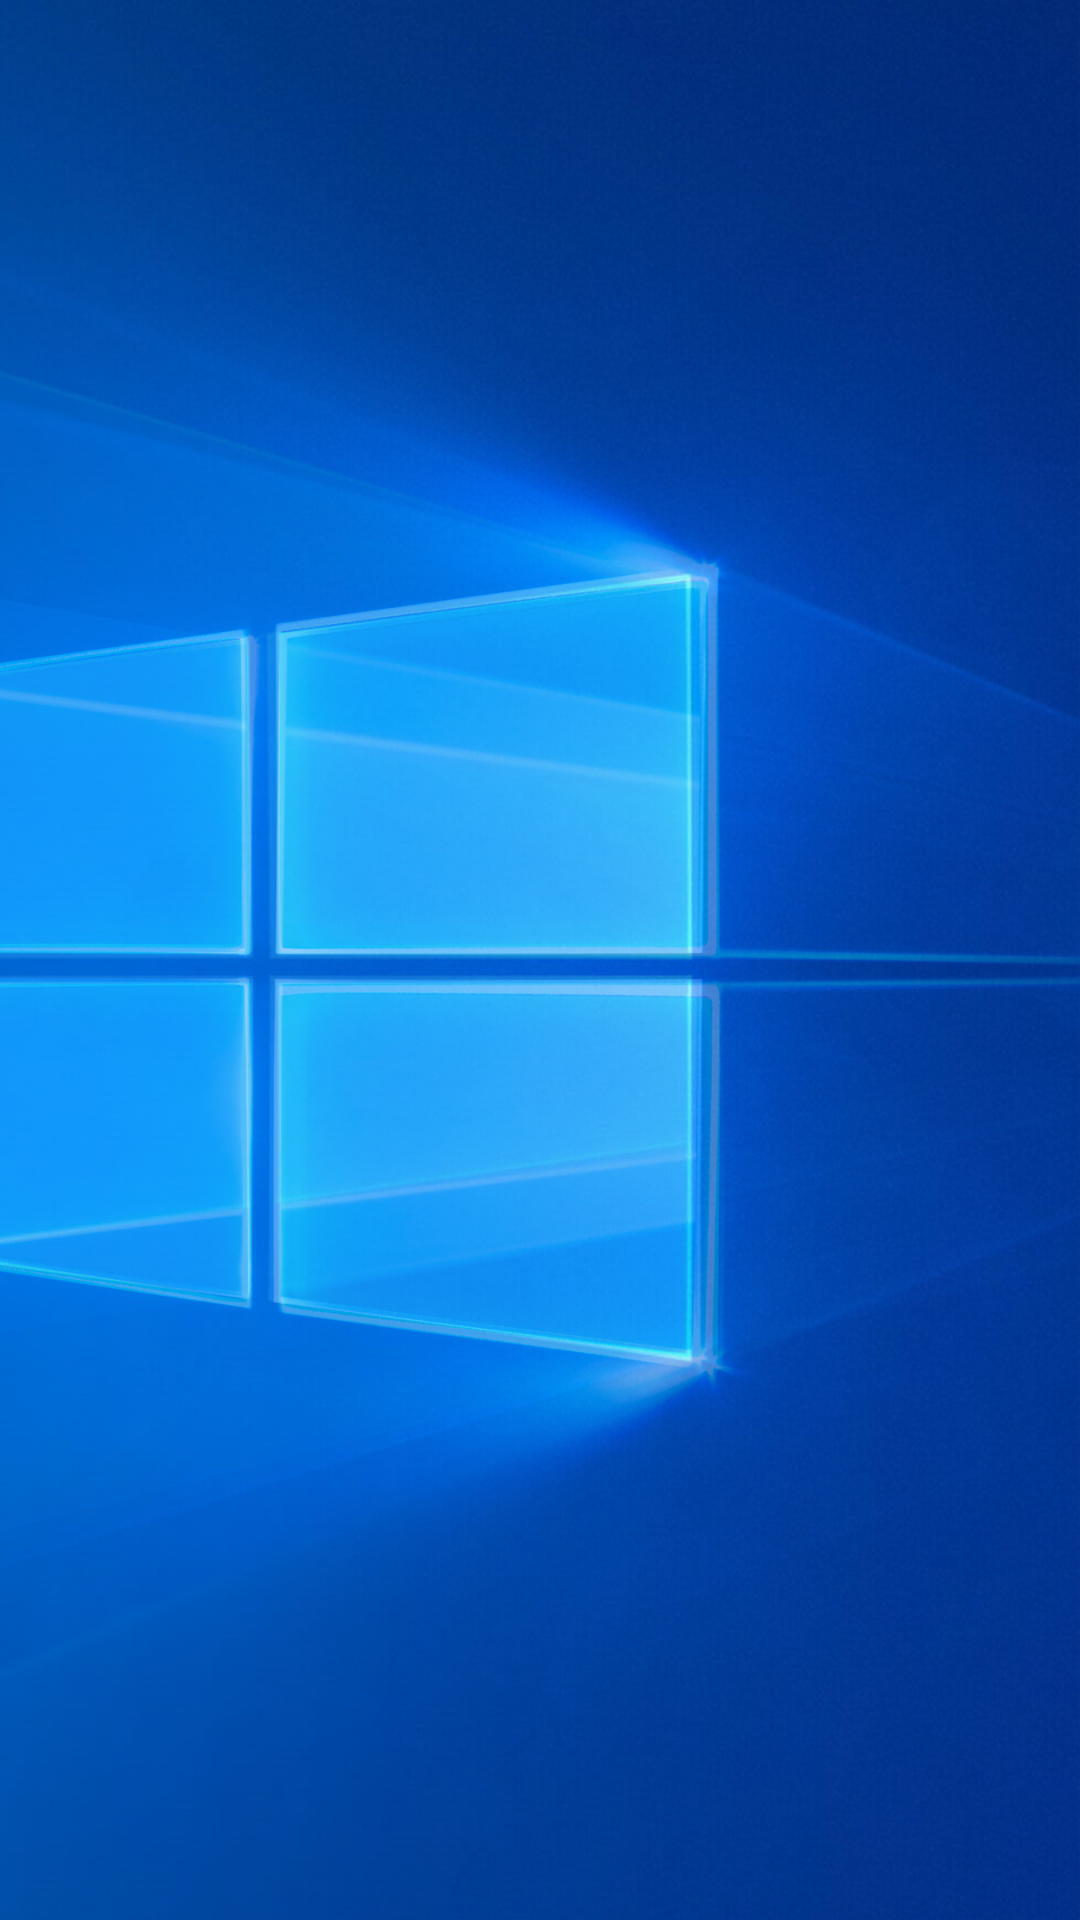 Hình nền Windows 10 mang đến nhiều lựa chọn tuyệt đẹp cho máy tính của bạn! Hãy tìm kiếm hình nền phù hợp với phong cách của bạn và biến màn hình của bạn trở nên độc đáo hơn.